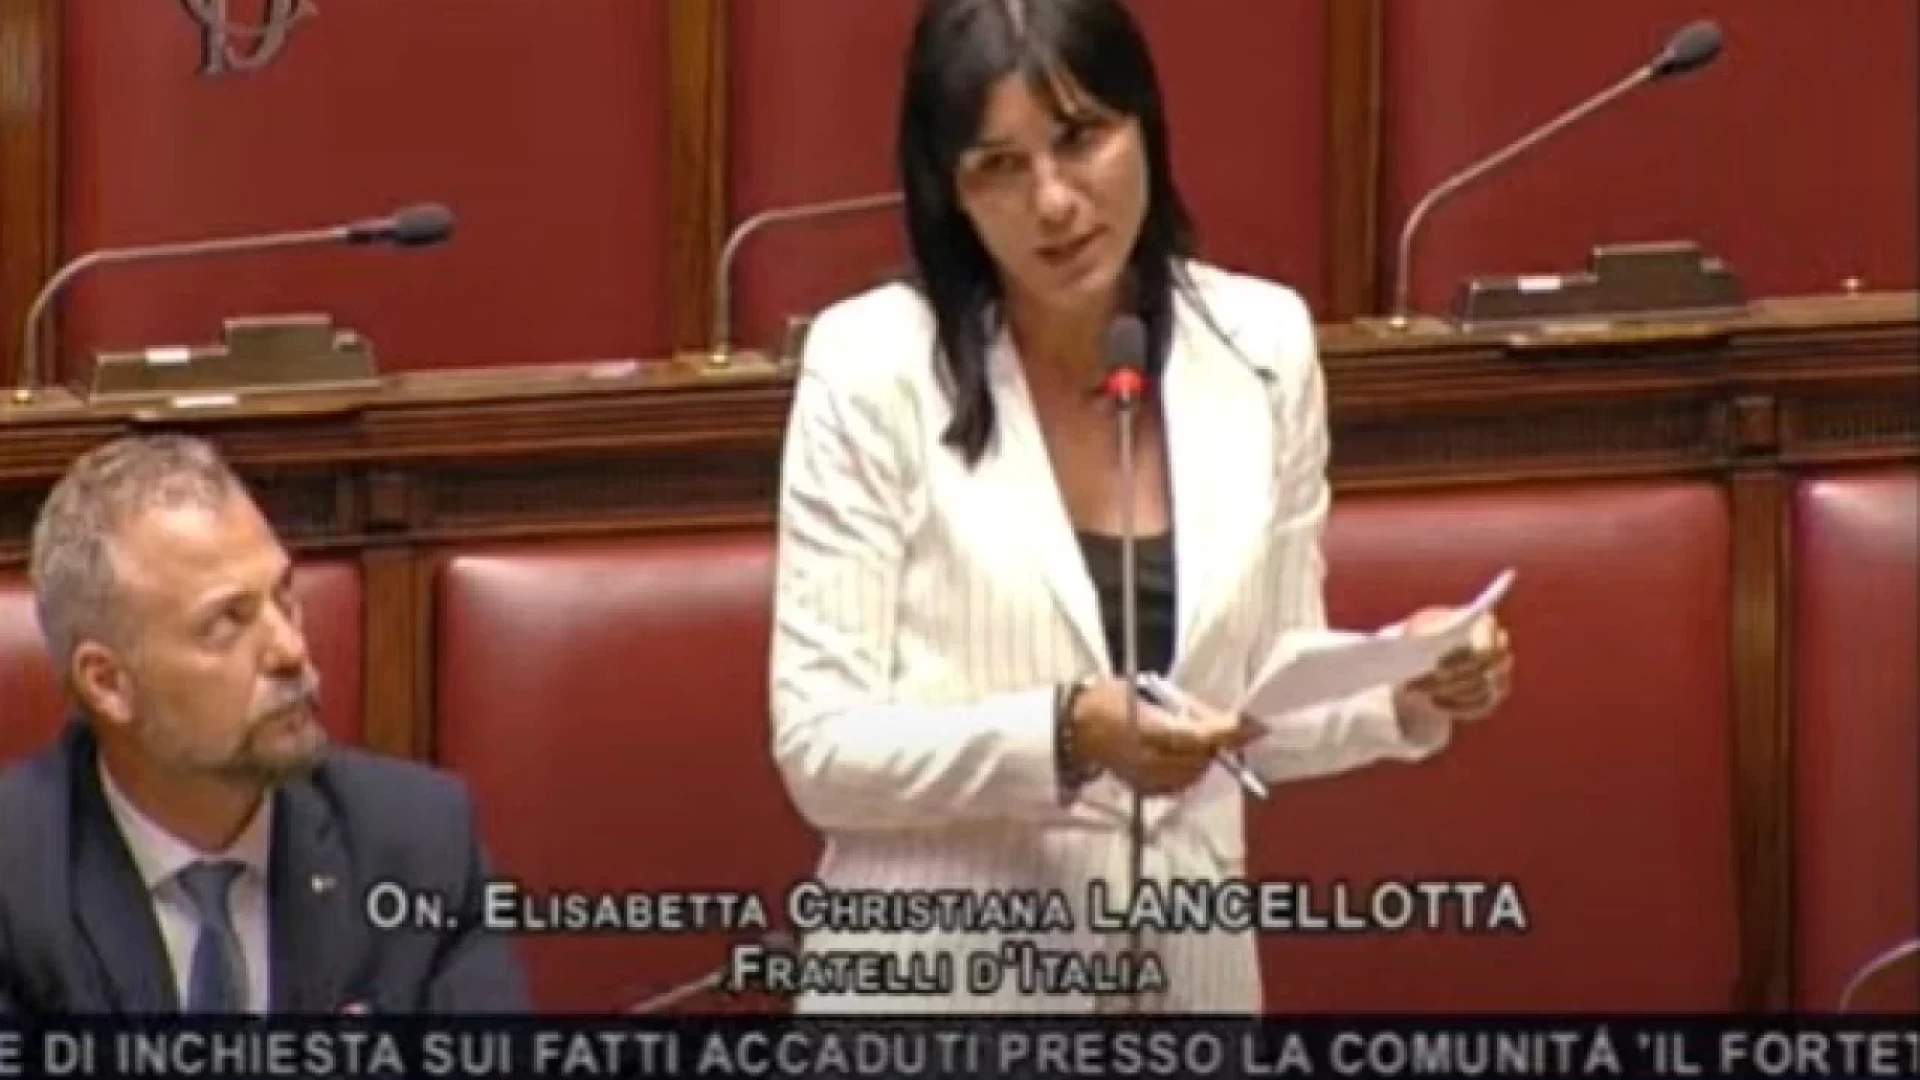 Commissione Parlamentare di inchiesta sul femminicidio e violenza di genere, l’Onorevole Elisabetta Lancellotta nominata capogruppo della commissione parlamentare.